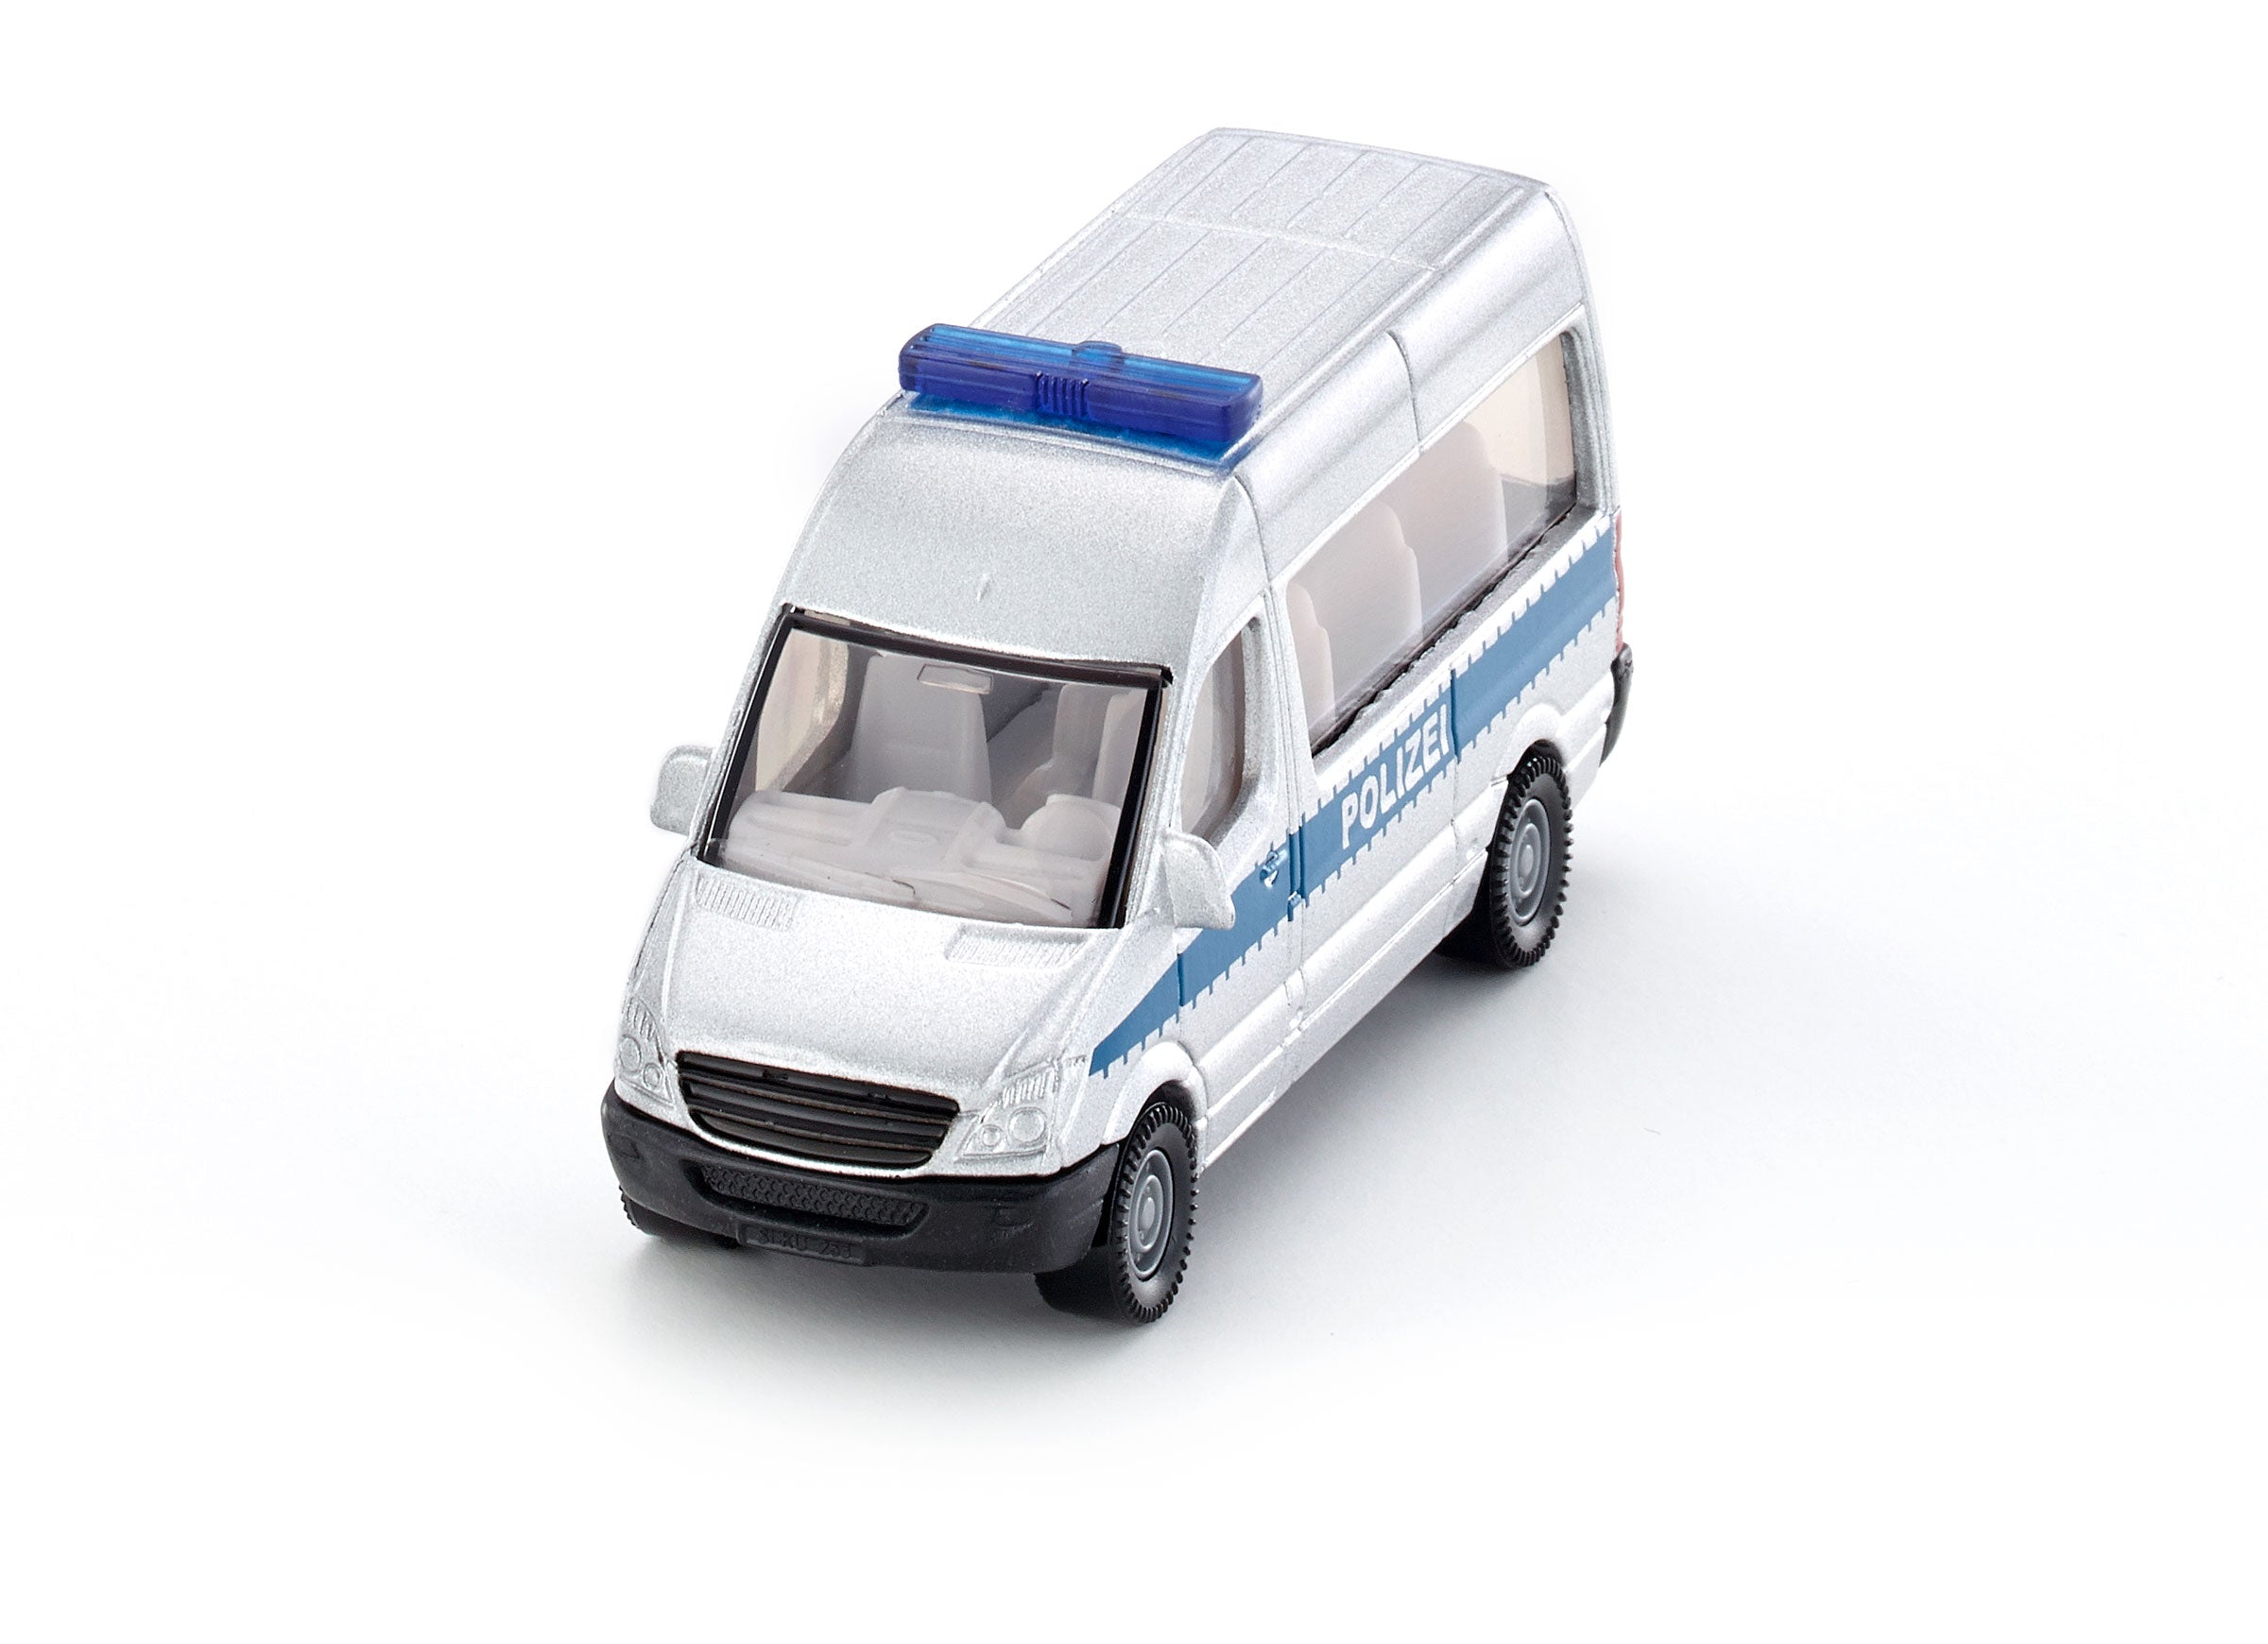 Siku 1:87 Police Van